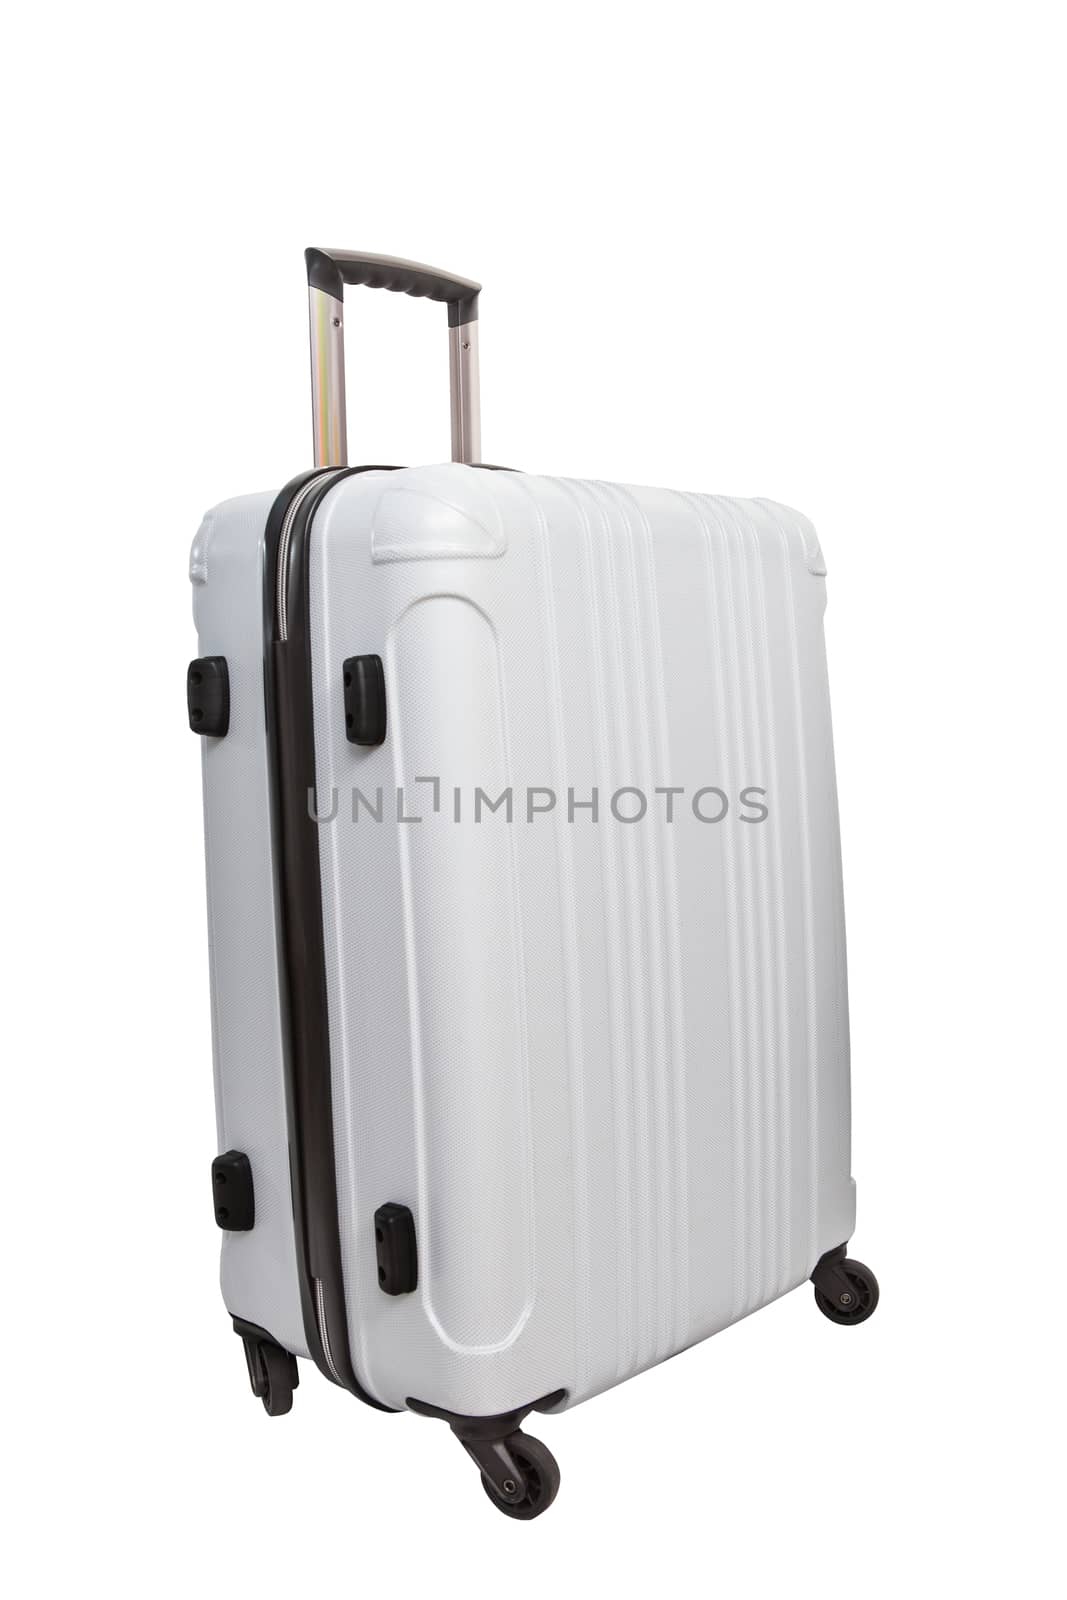 white luggage traveling suitcase isolated white background by khunaspix